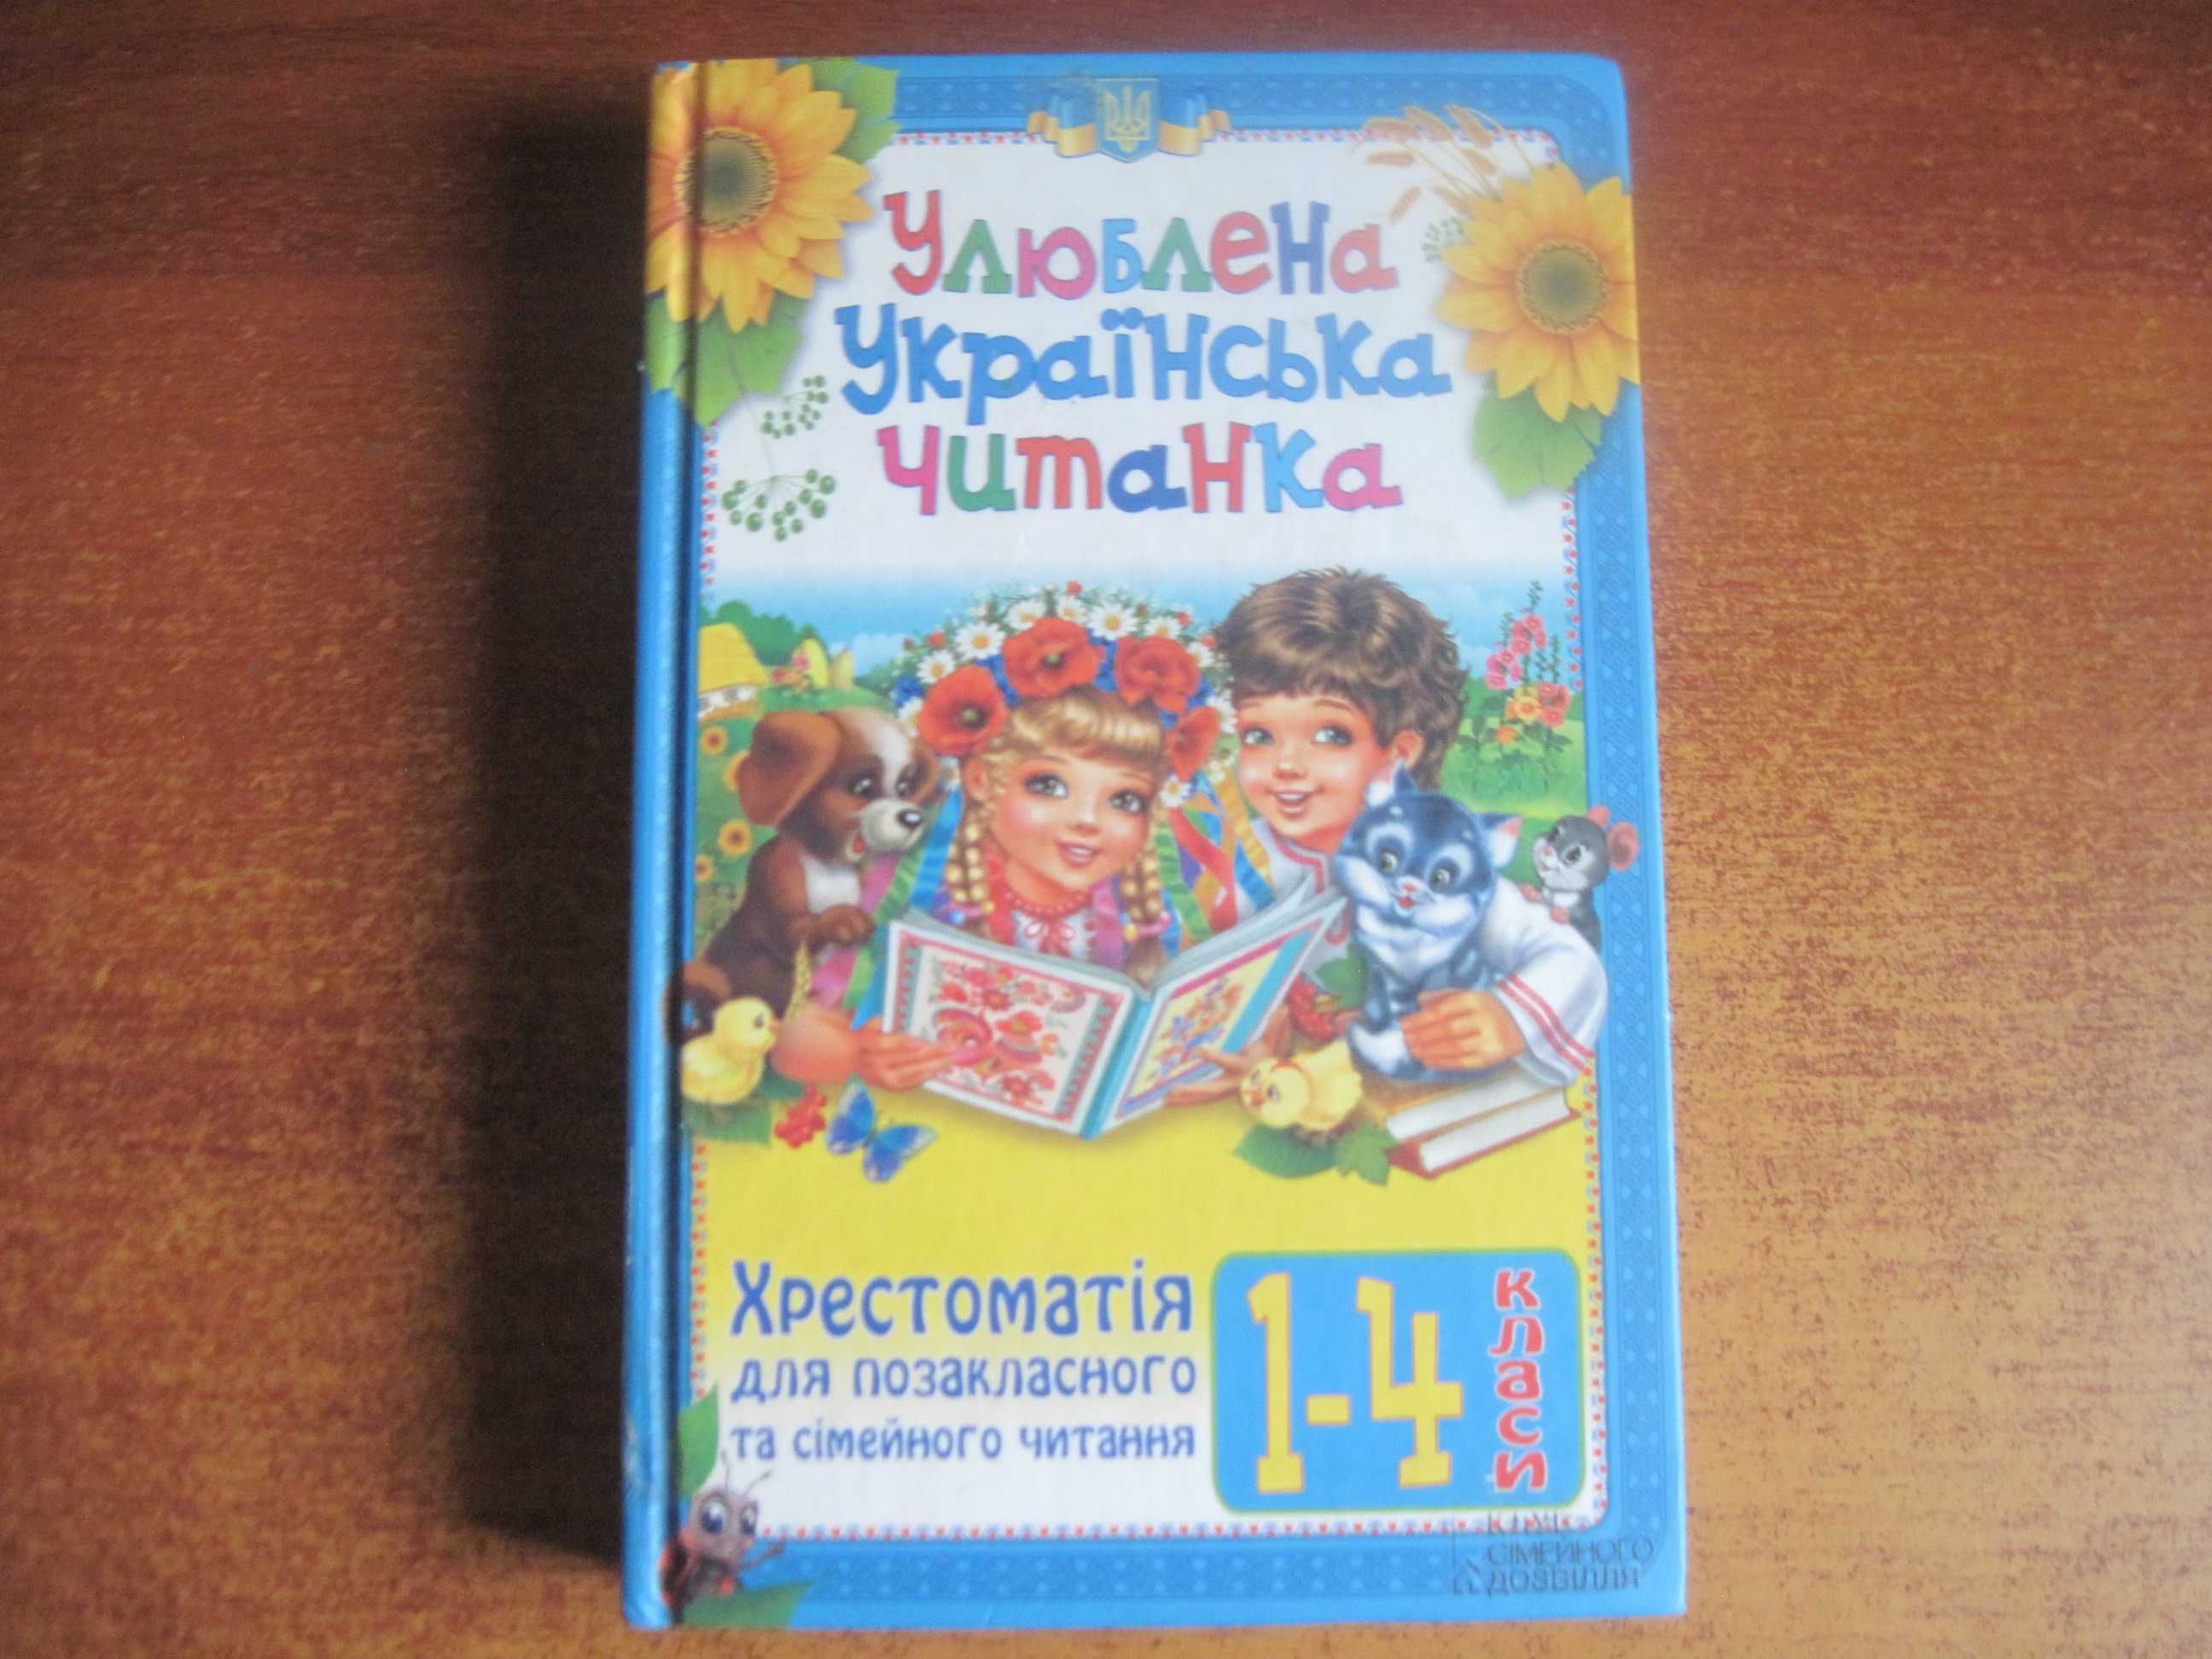 Улюблена українська читанка Хрестоматія для позакл і сімейного читання